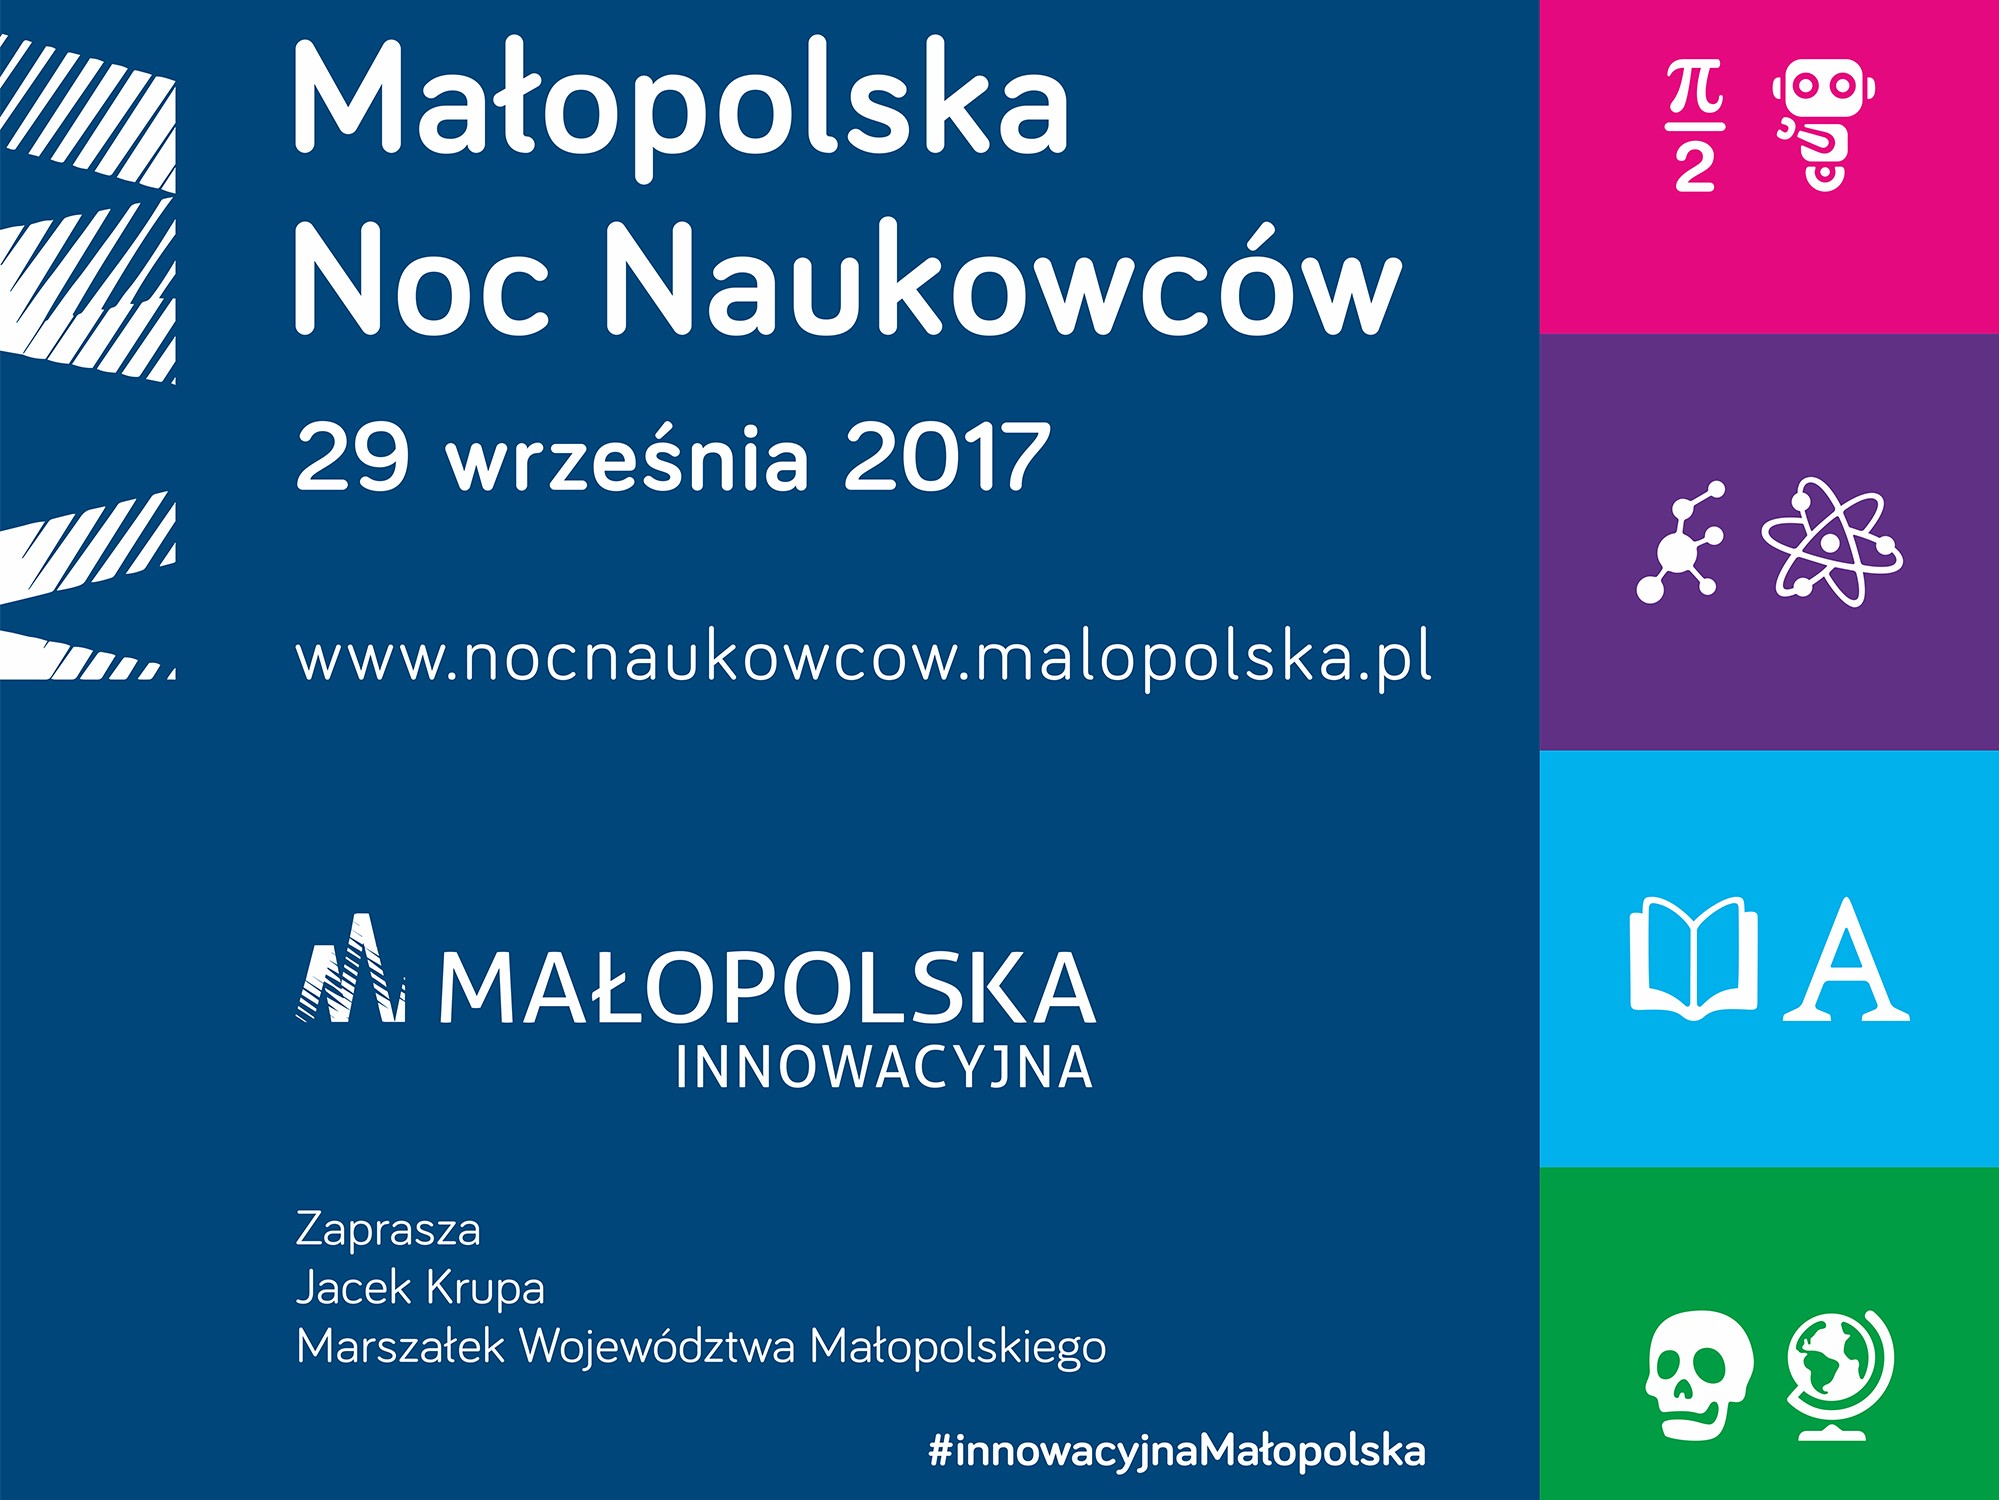 KreaTech partnerem Noc Naukowców 2017 w Krakowie! 